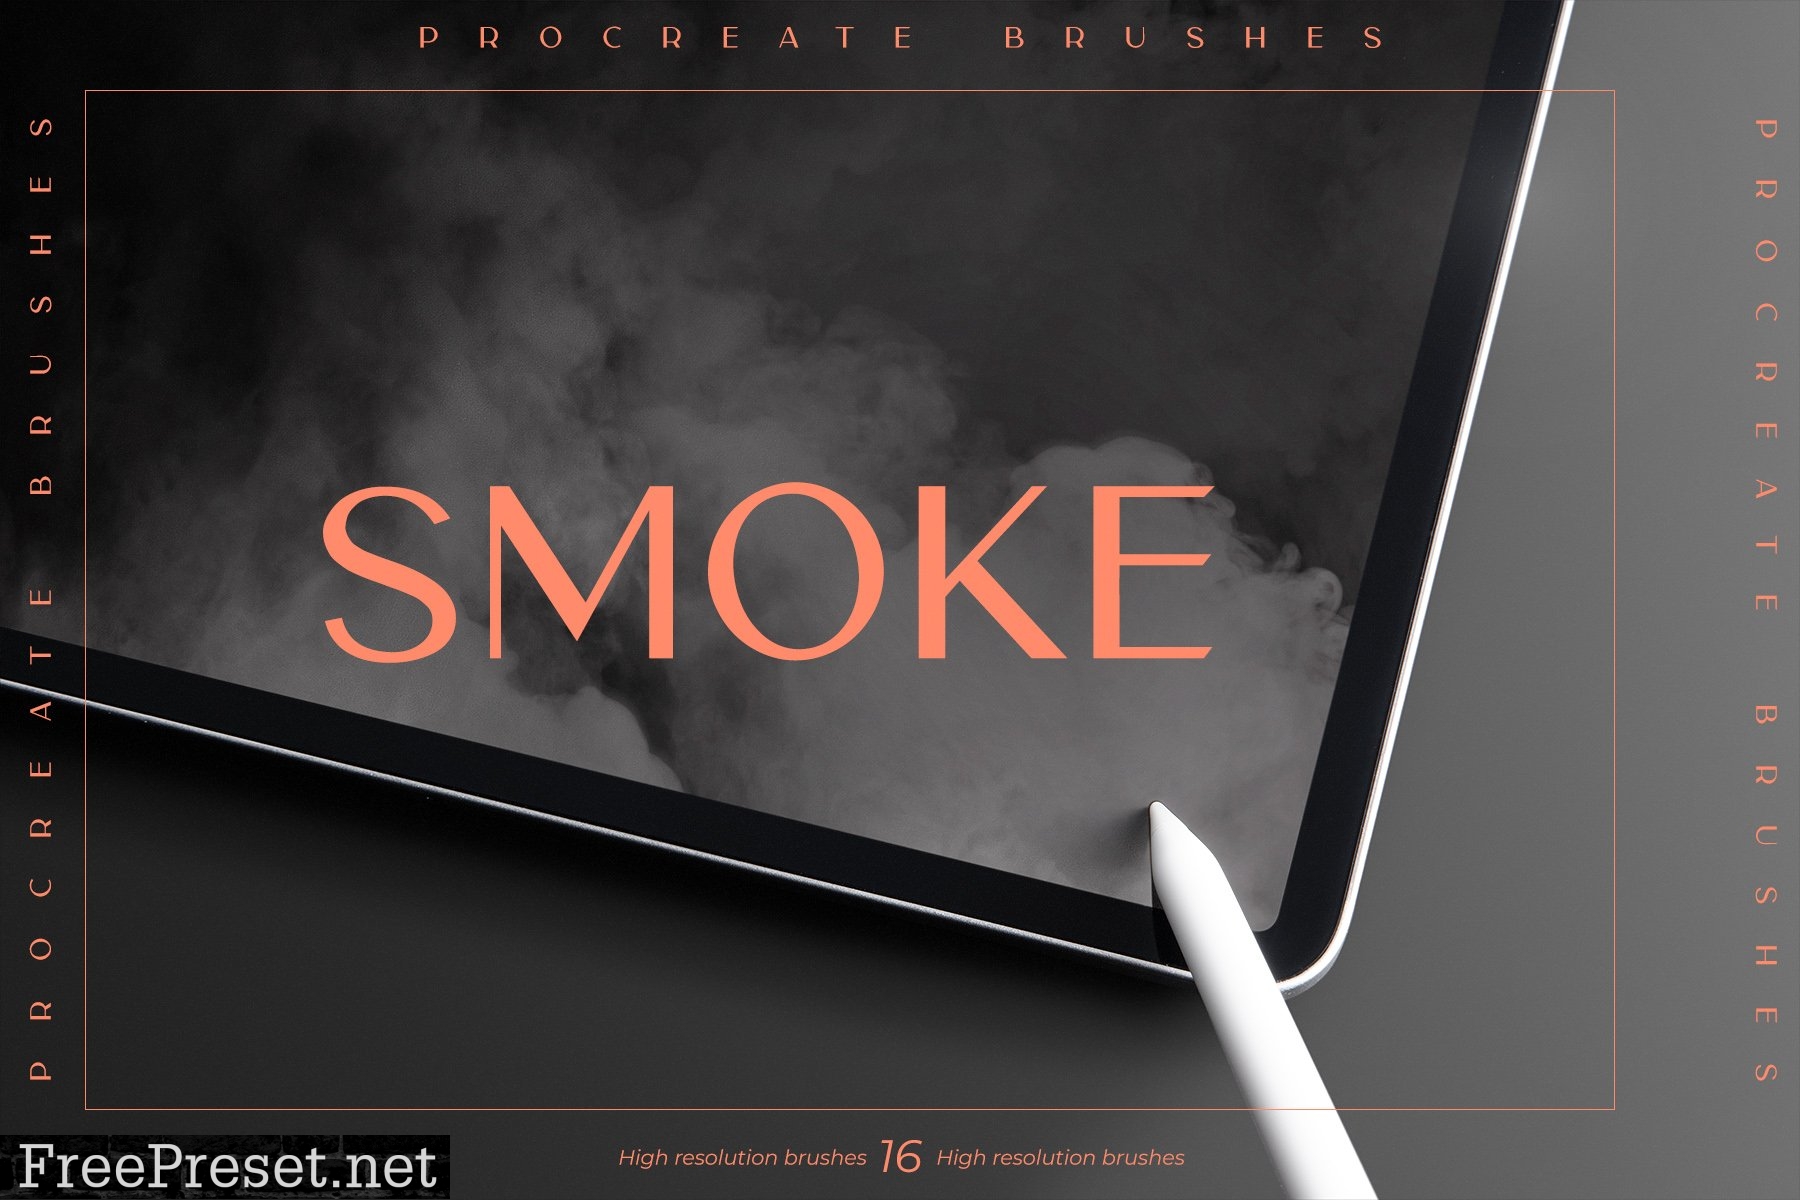 Smoke Procreate Brushes 6492851